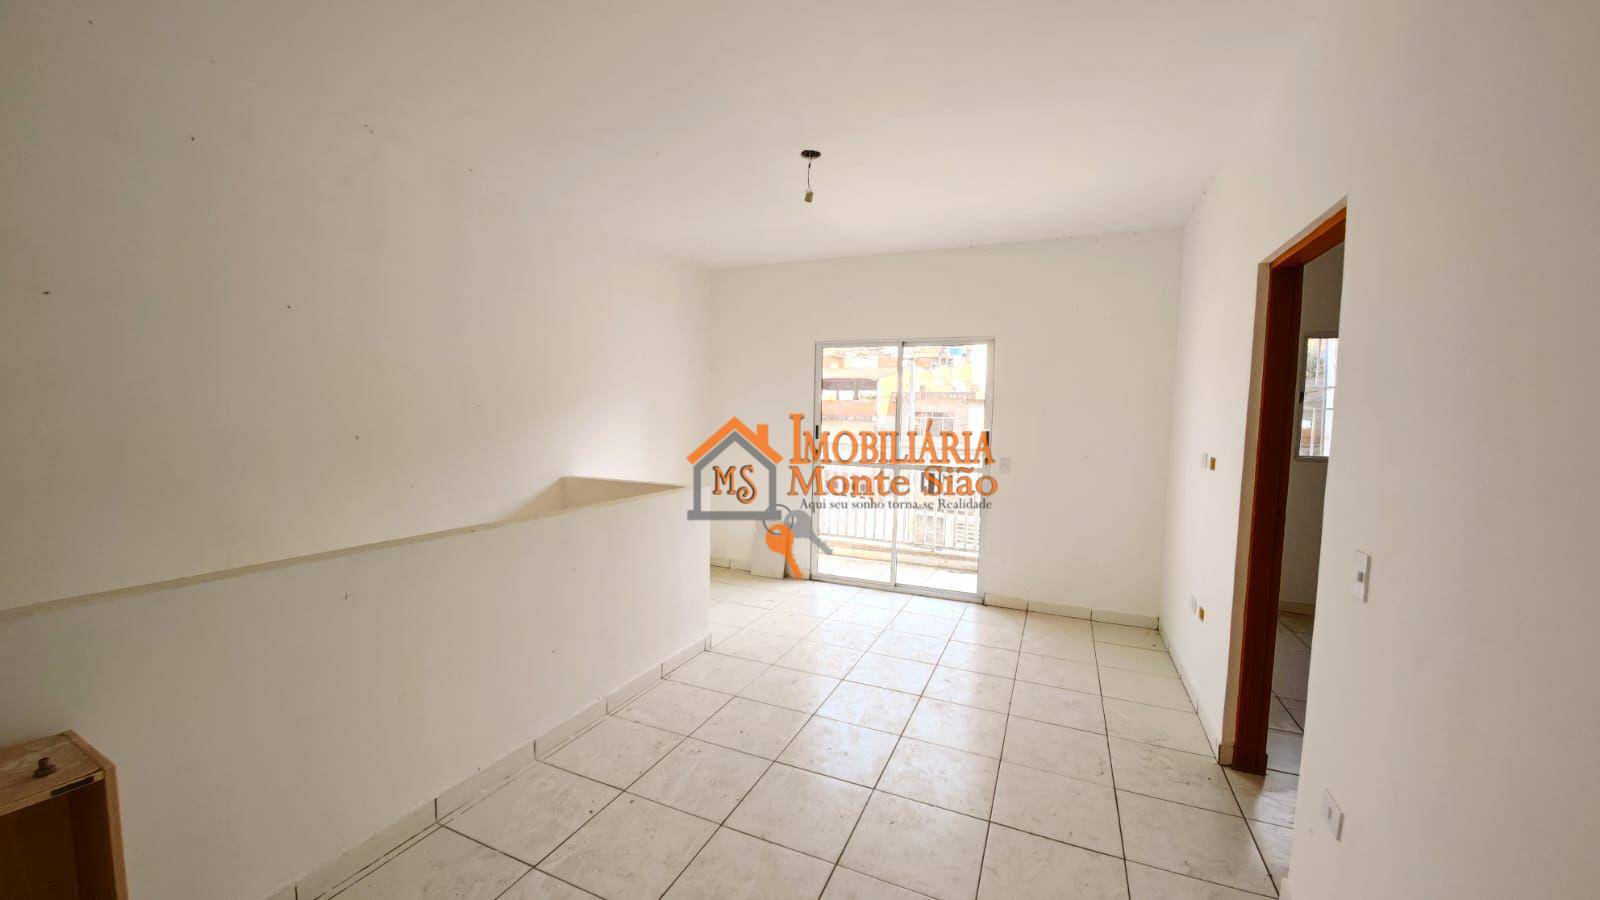 Casa com 2 dormitórios à venda, 70 m² por R$ 225.000,00 - Jardim Fortaleza - Guarulhos/SP